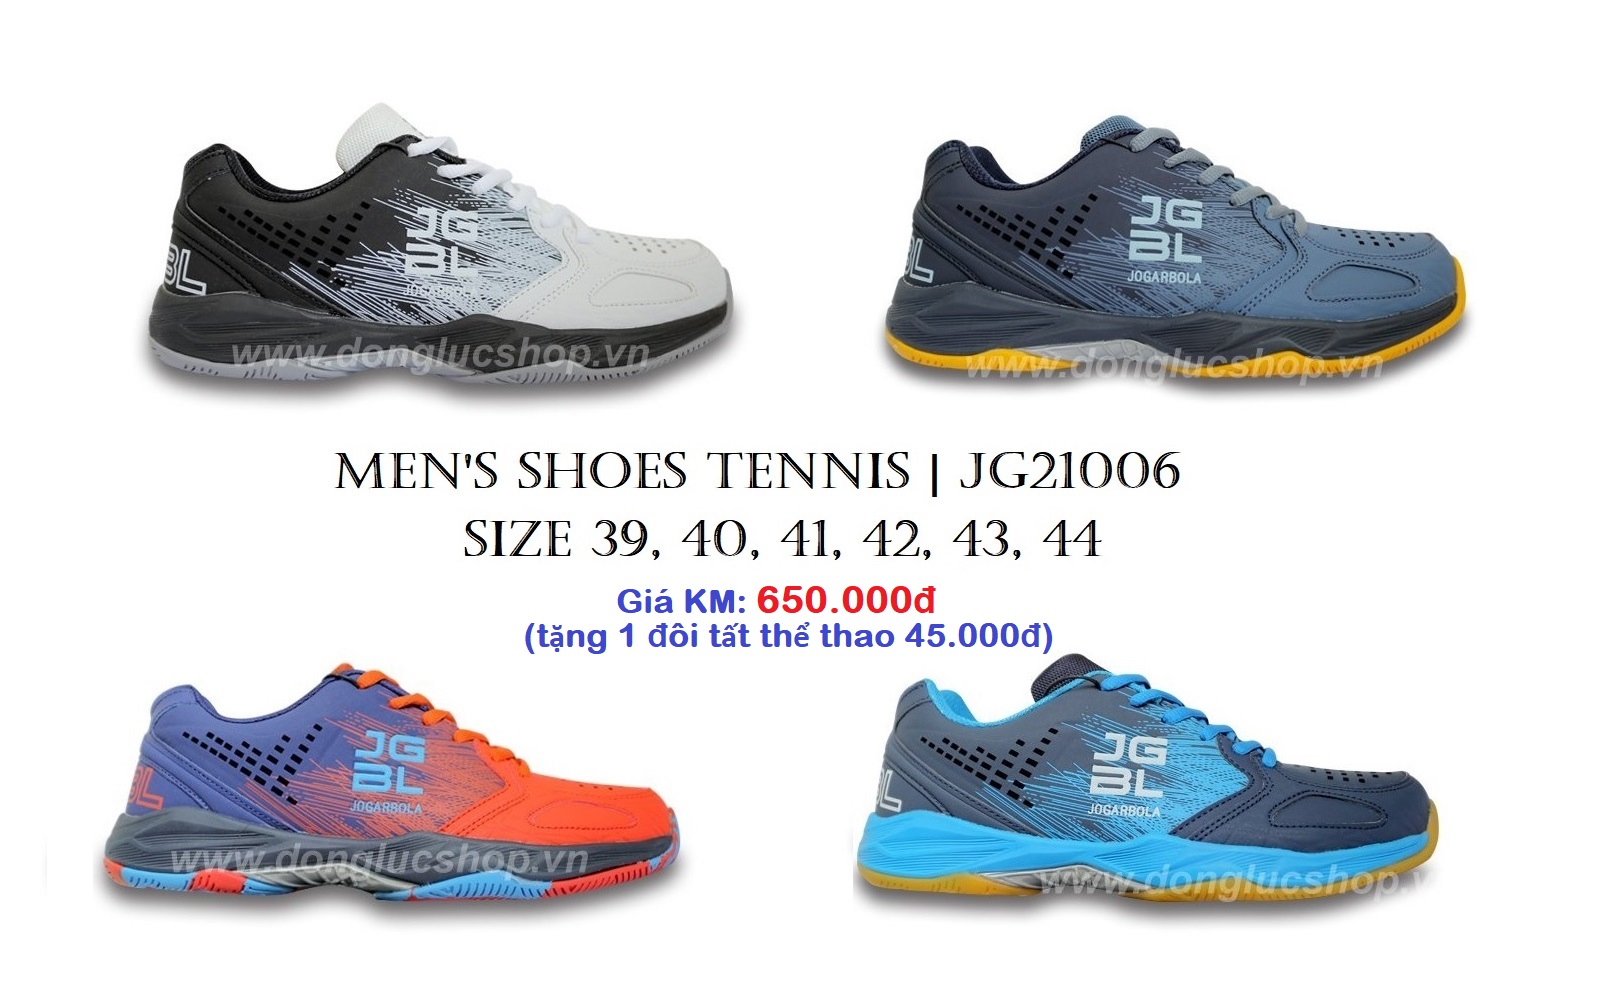 Jg21006 Là Mẫu Giày Tennis Jogarbola Rất Phù Hợp Để Tập Luyện Và Thi Đấu  Phong Trào | Trang Nguyên Sport